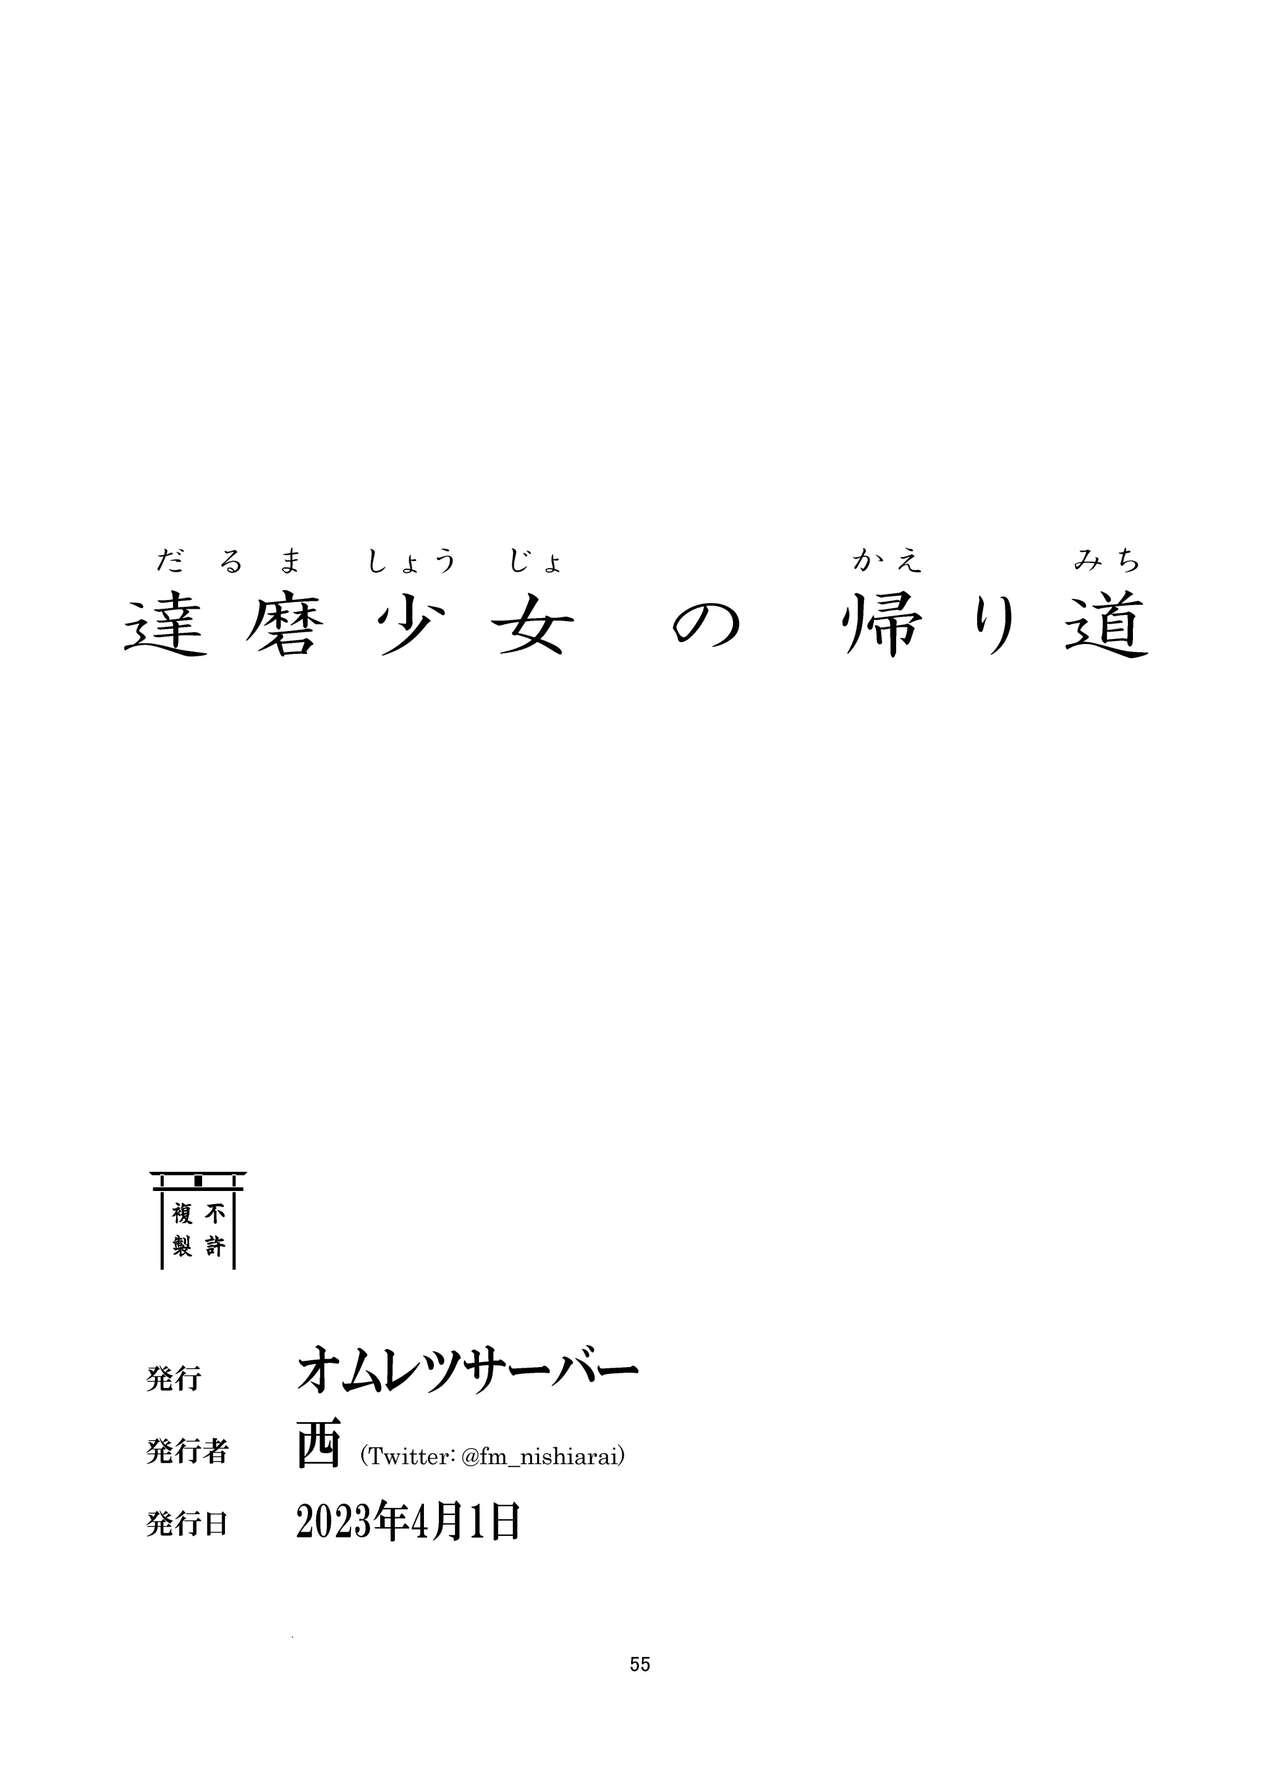 Busty daruma shoujo no kaeri michi - Original Roludo - Page 55